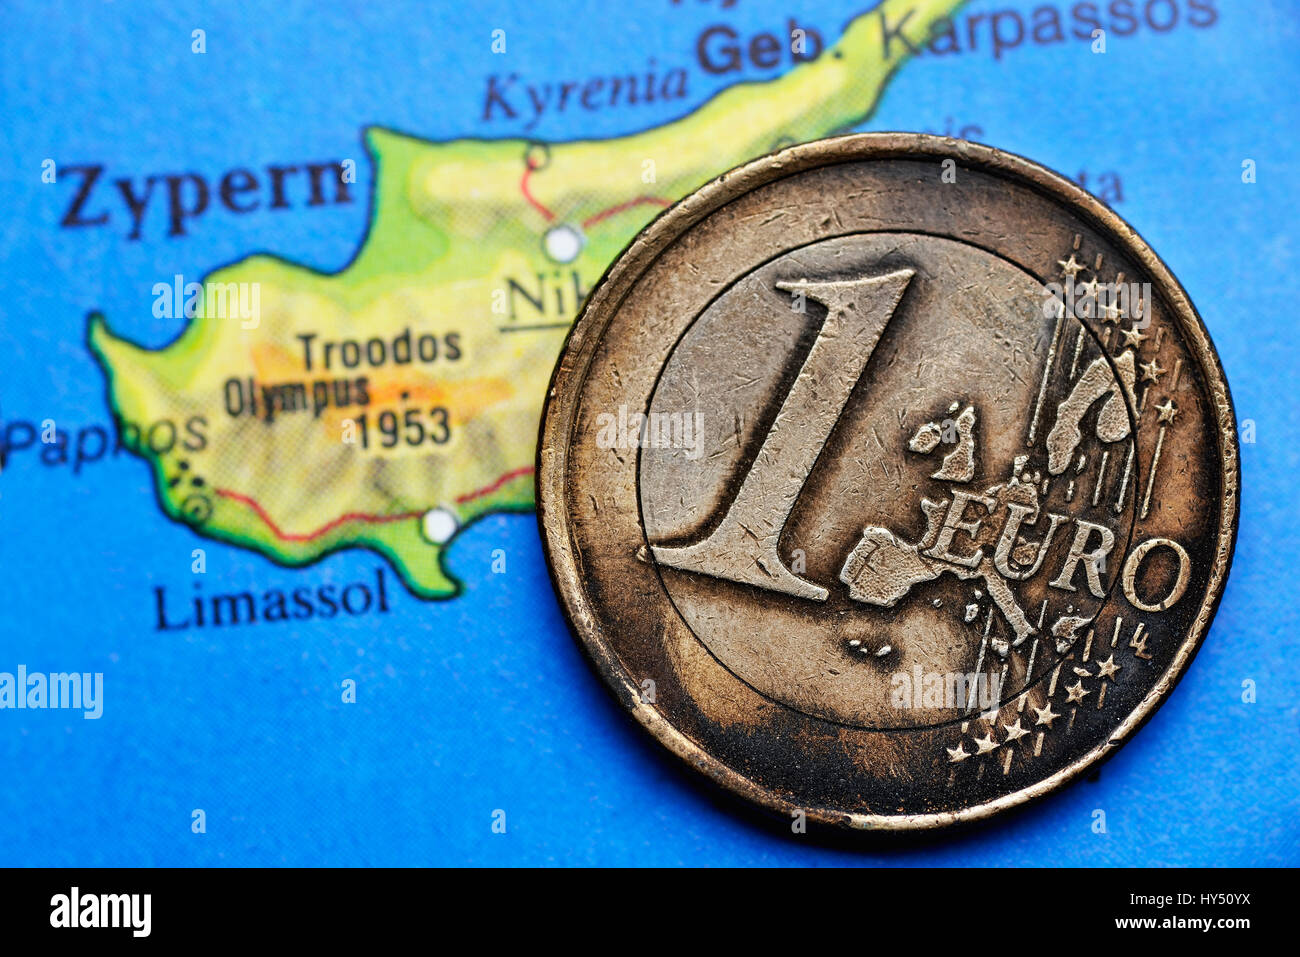 Bruciato euro-coin uno sulla mappa di Cipro, eurocrisis, Angebrannte Ein-Euro-Muenze auf Zypern-Landkarte, Eurokrise Foto Stock